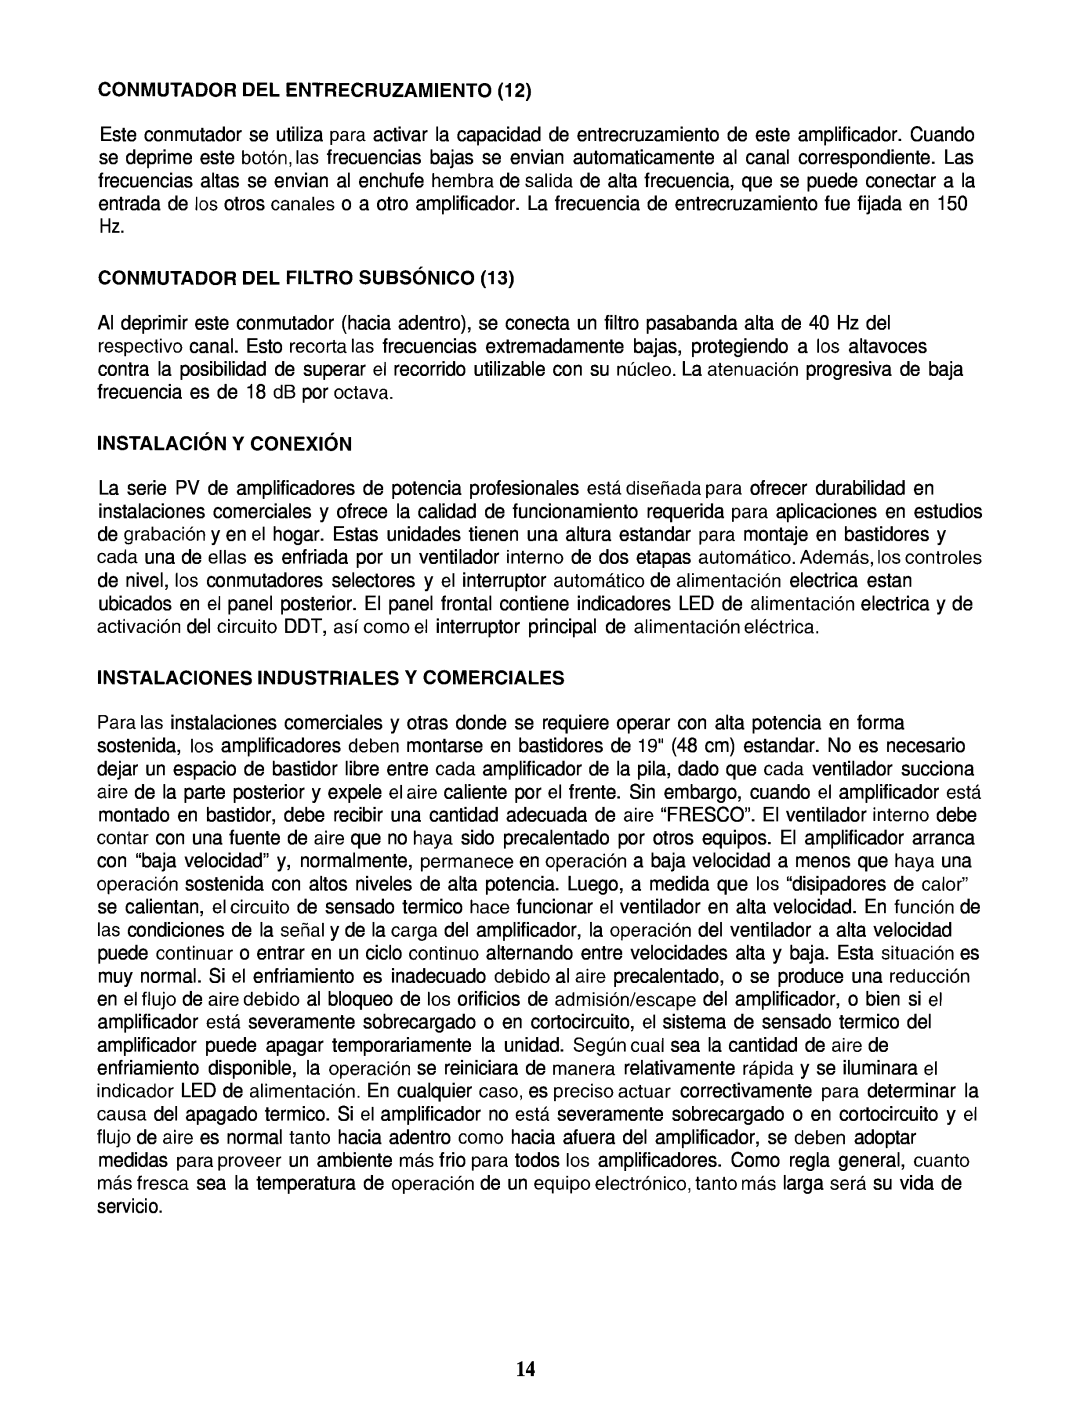 Peavey PV 2000 manual Conmutador Del Entrecruzamiento, CONMUTADOR DEL FILTRO SUBSdNlCO, INSTALACldN Y CONEXldN 